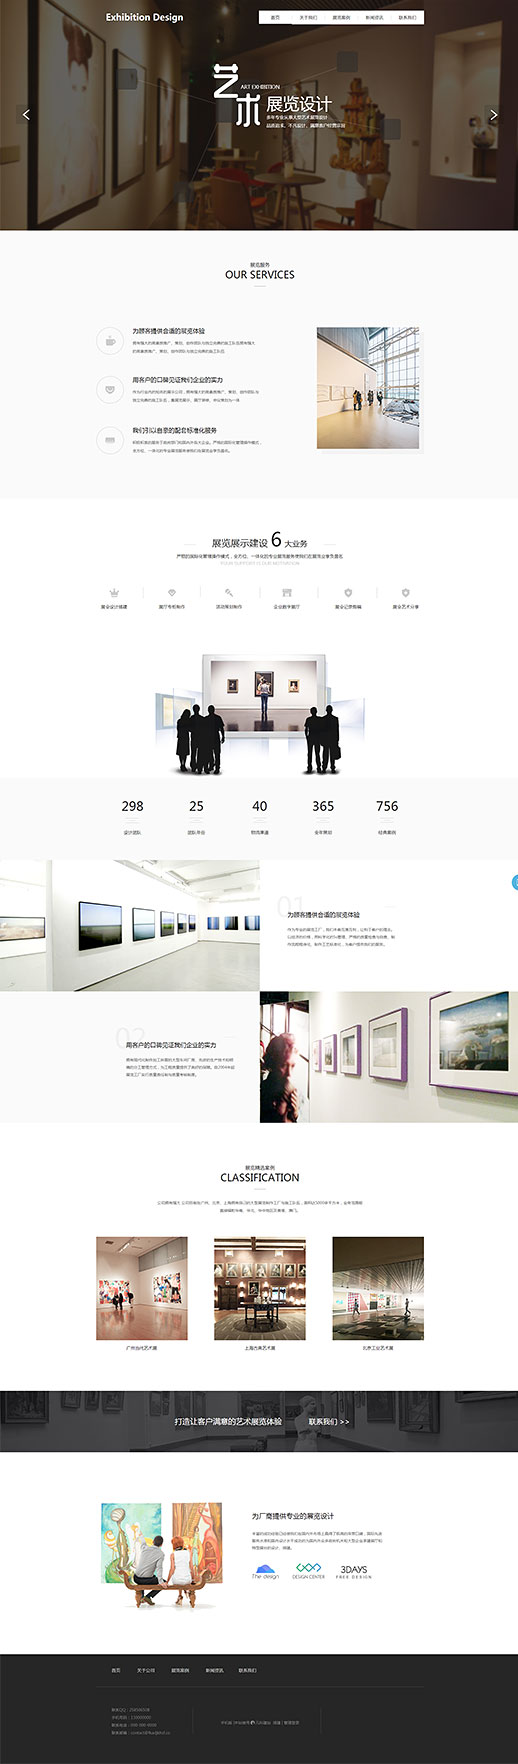 艺术展览展厅设计网站模板